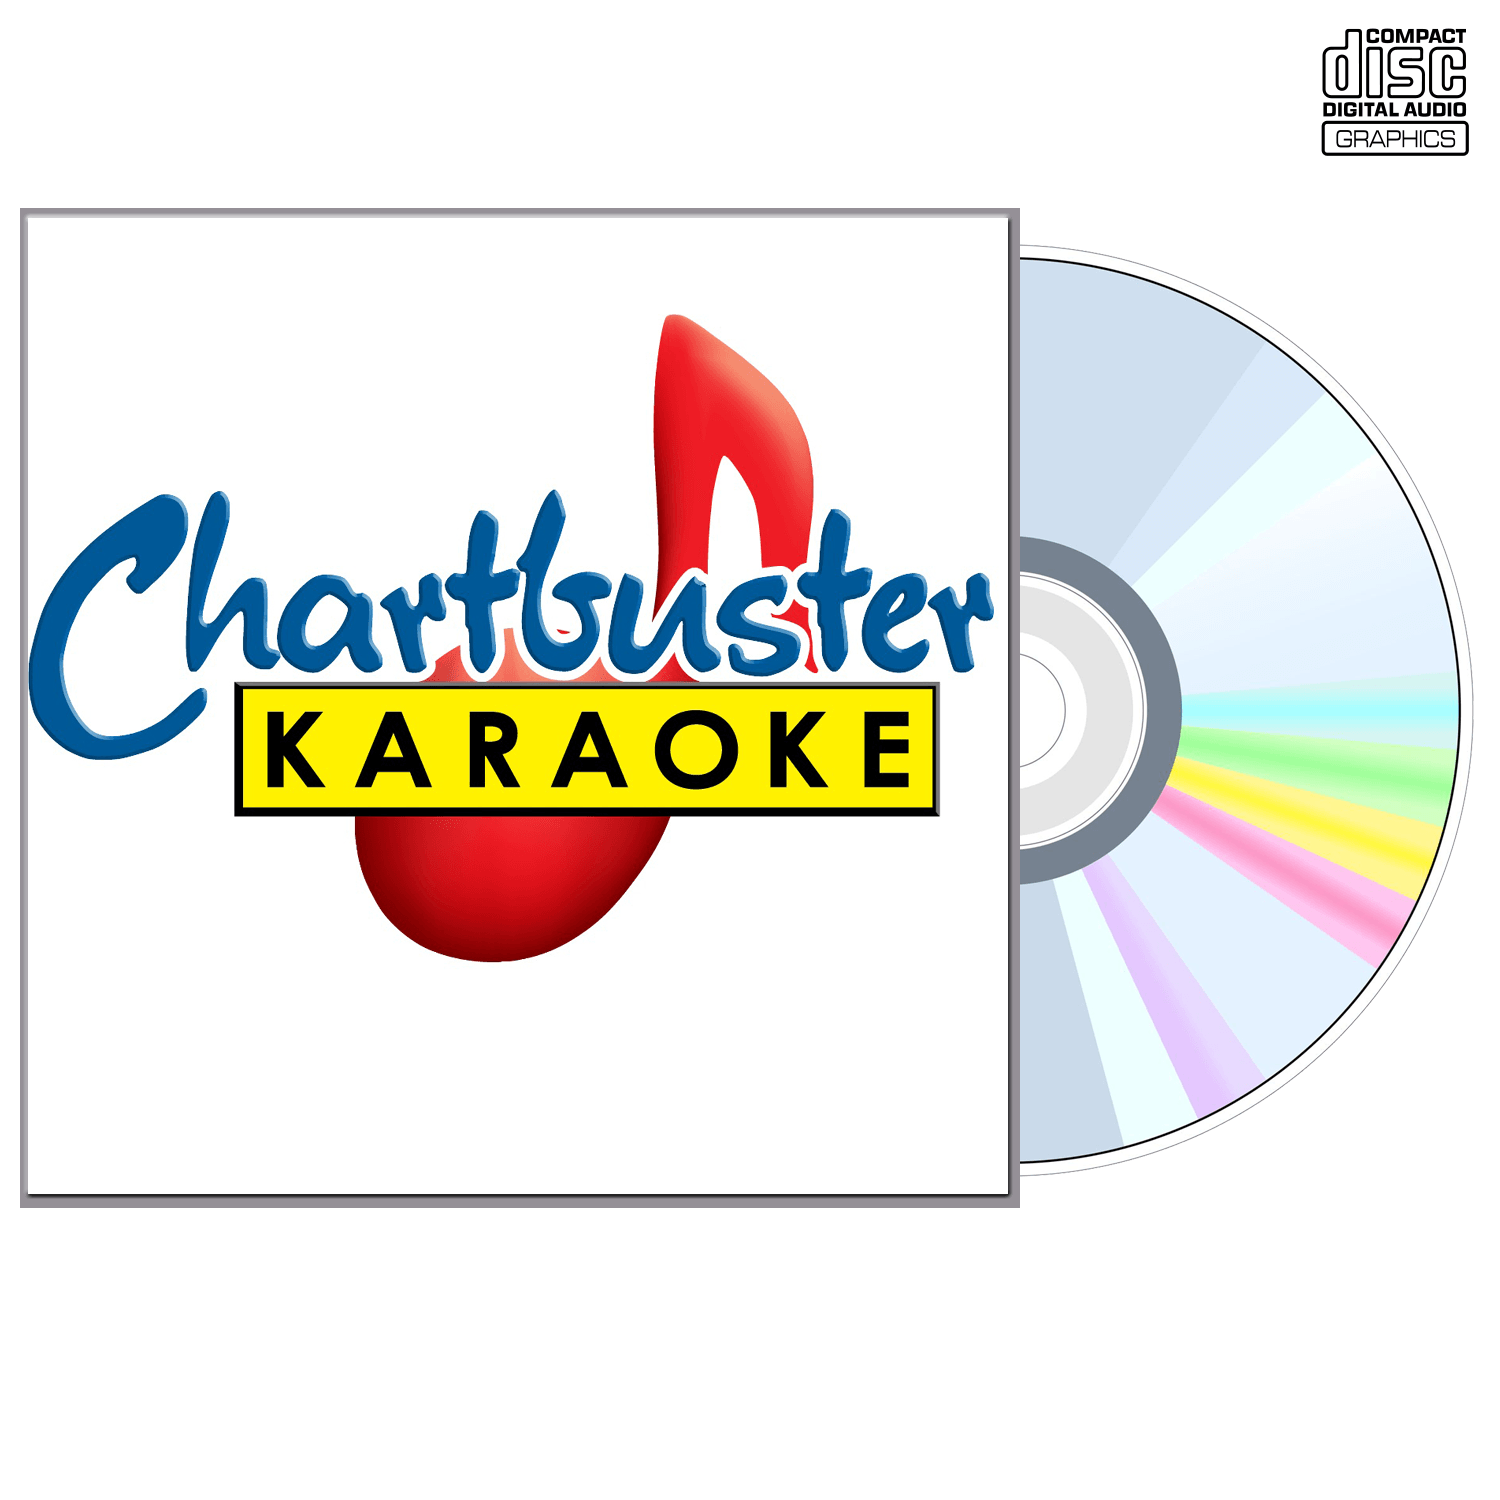 Santana - CD+G - Chartbuster Karaoke - Karaoke Home Entertainment